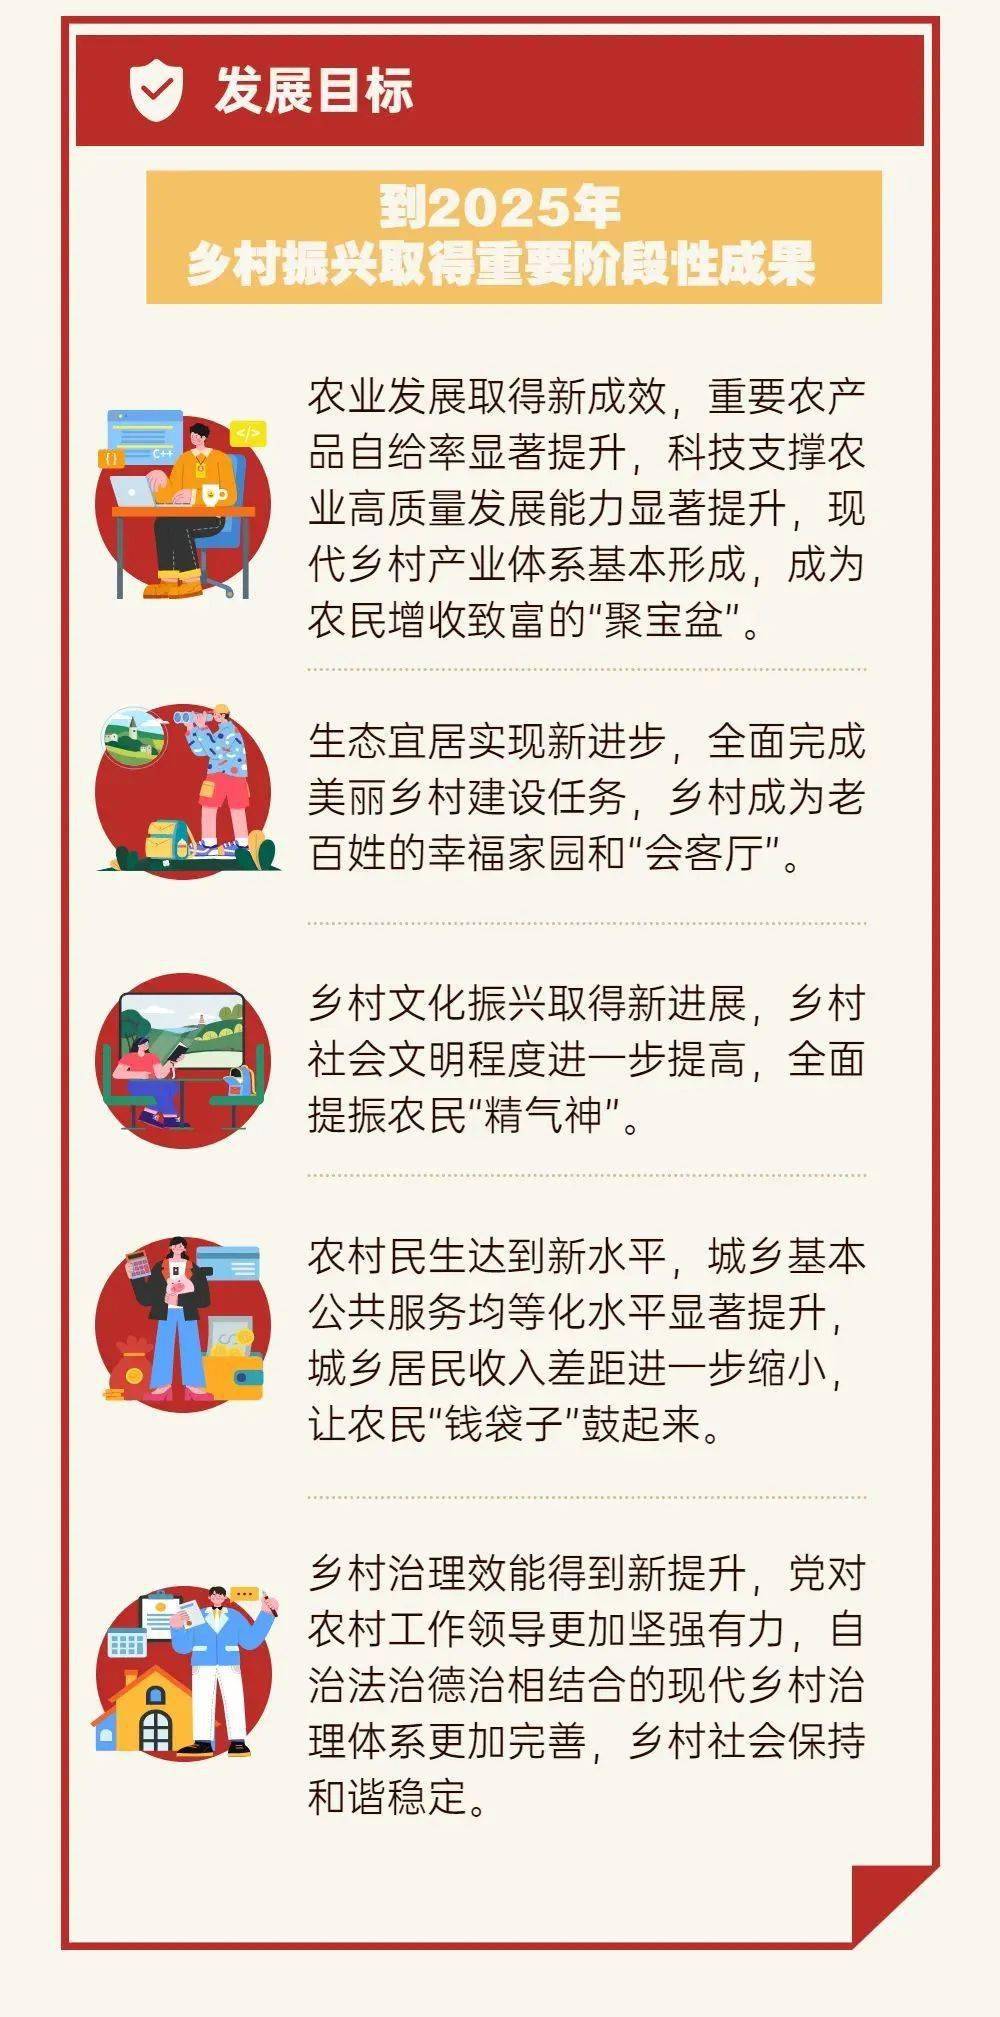 【新政速览】图解北京市十四五乡村振兴战略规划,干货速看!